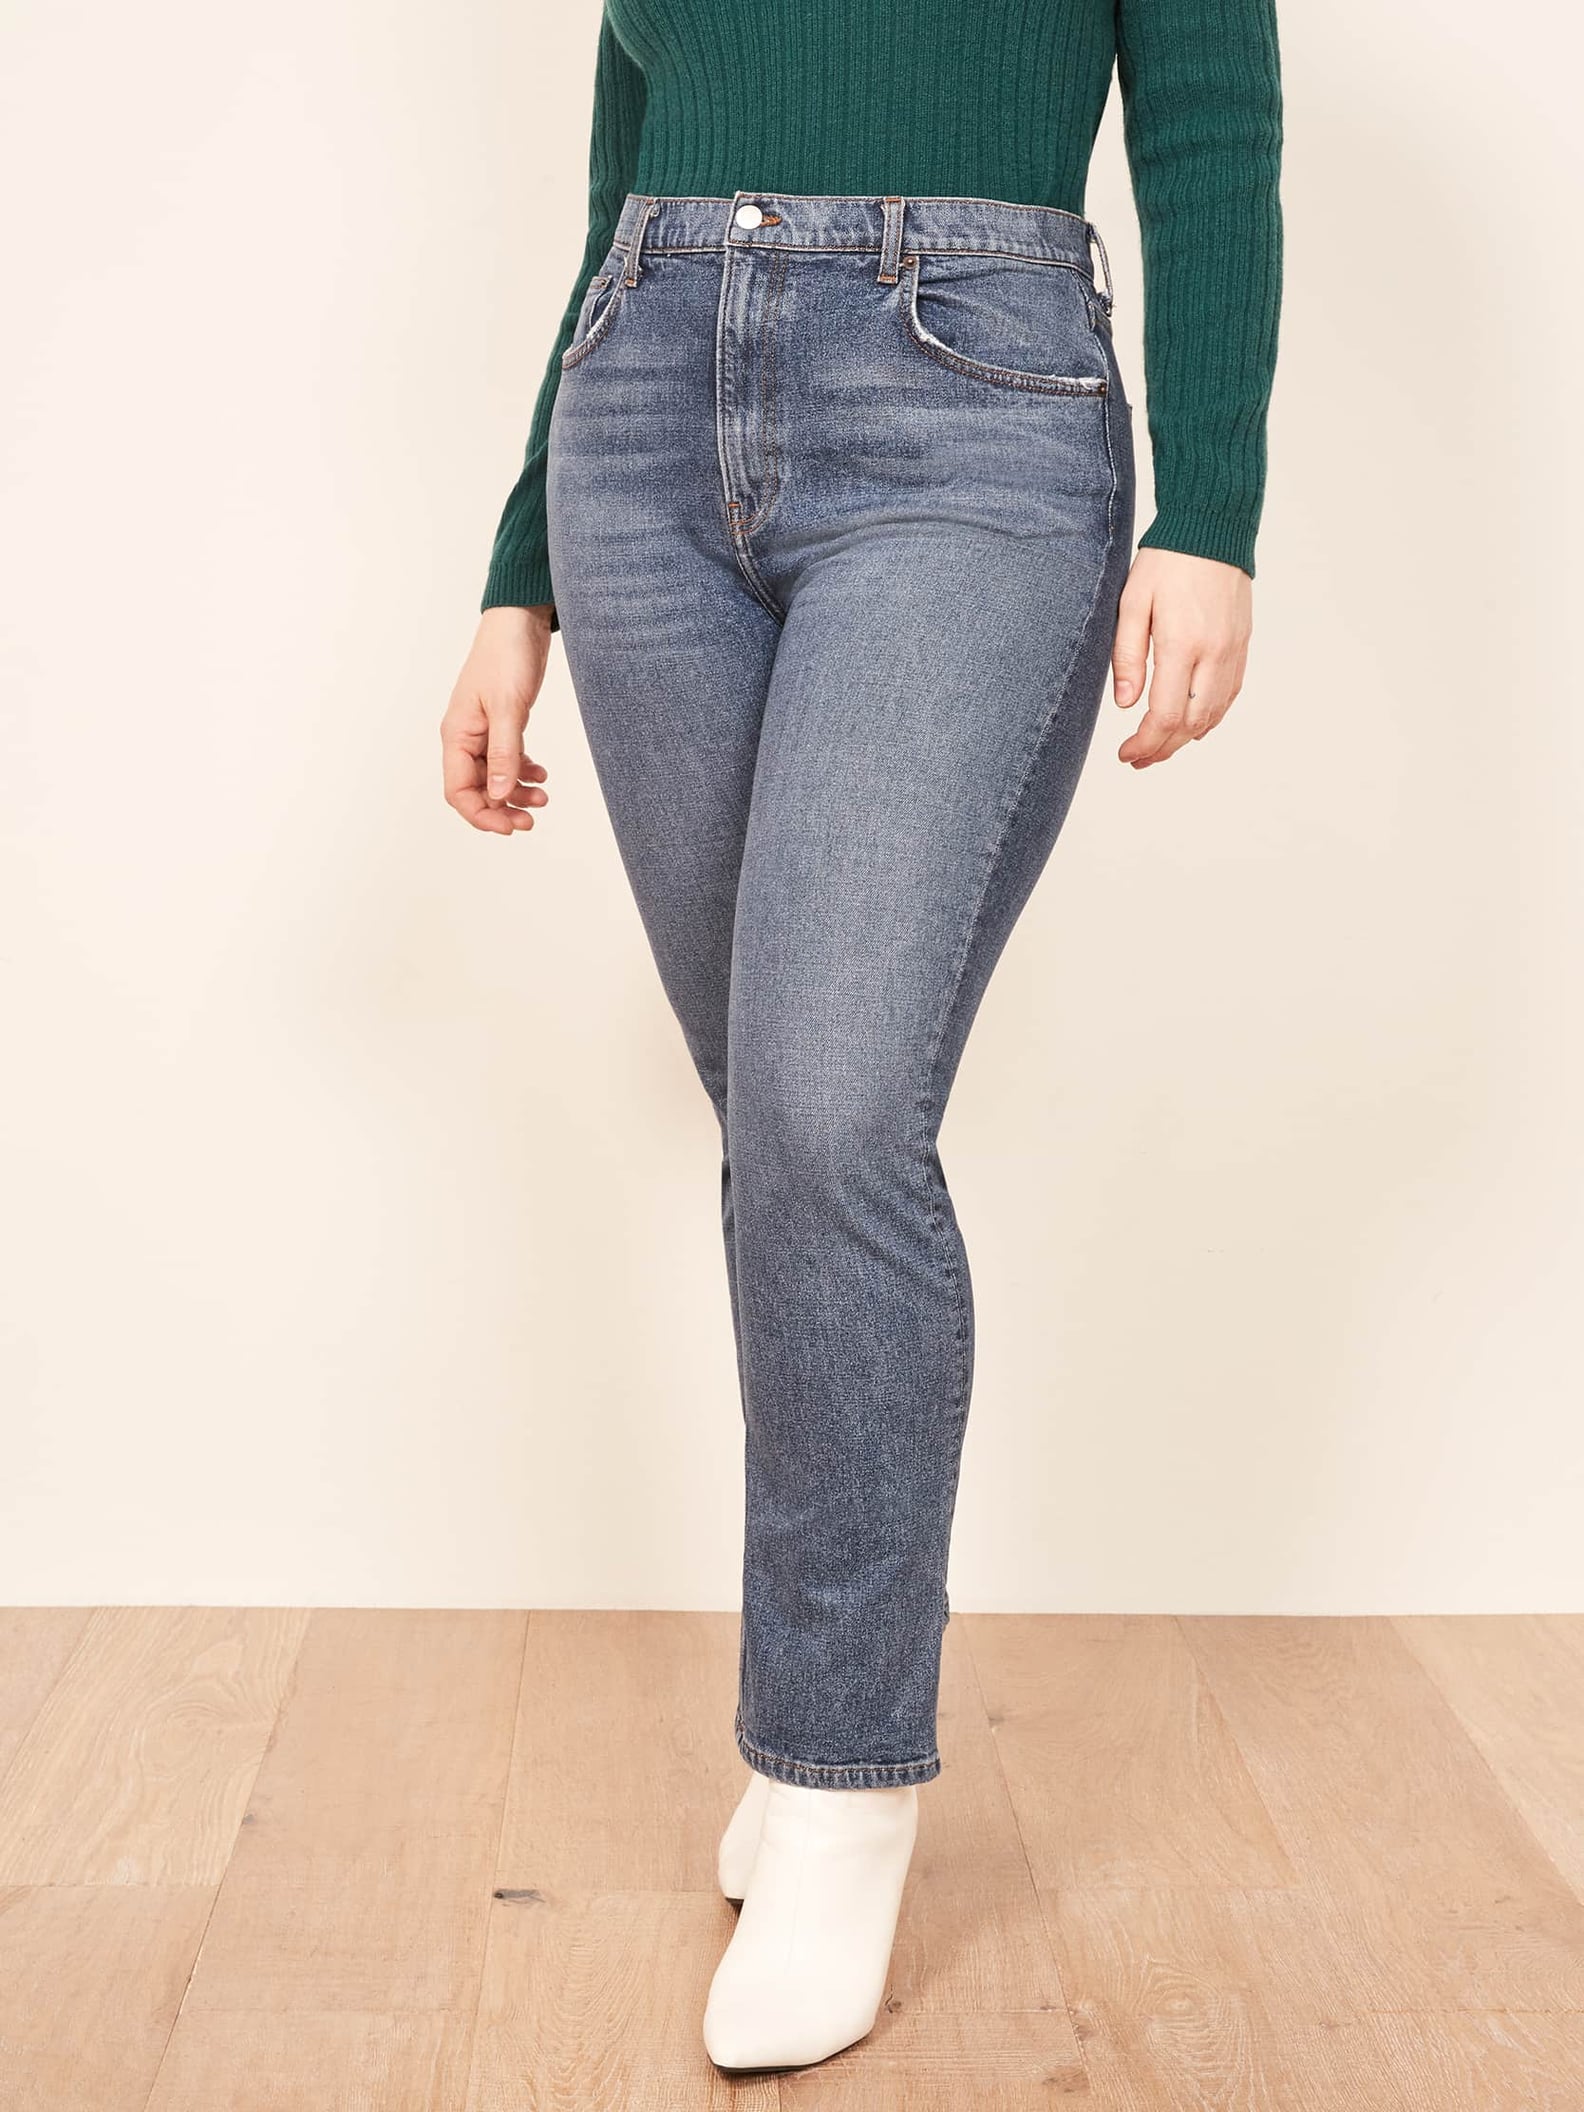 Reformation Plus-Size Jeans | POPSUGAR Fashion